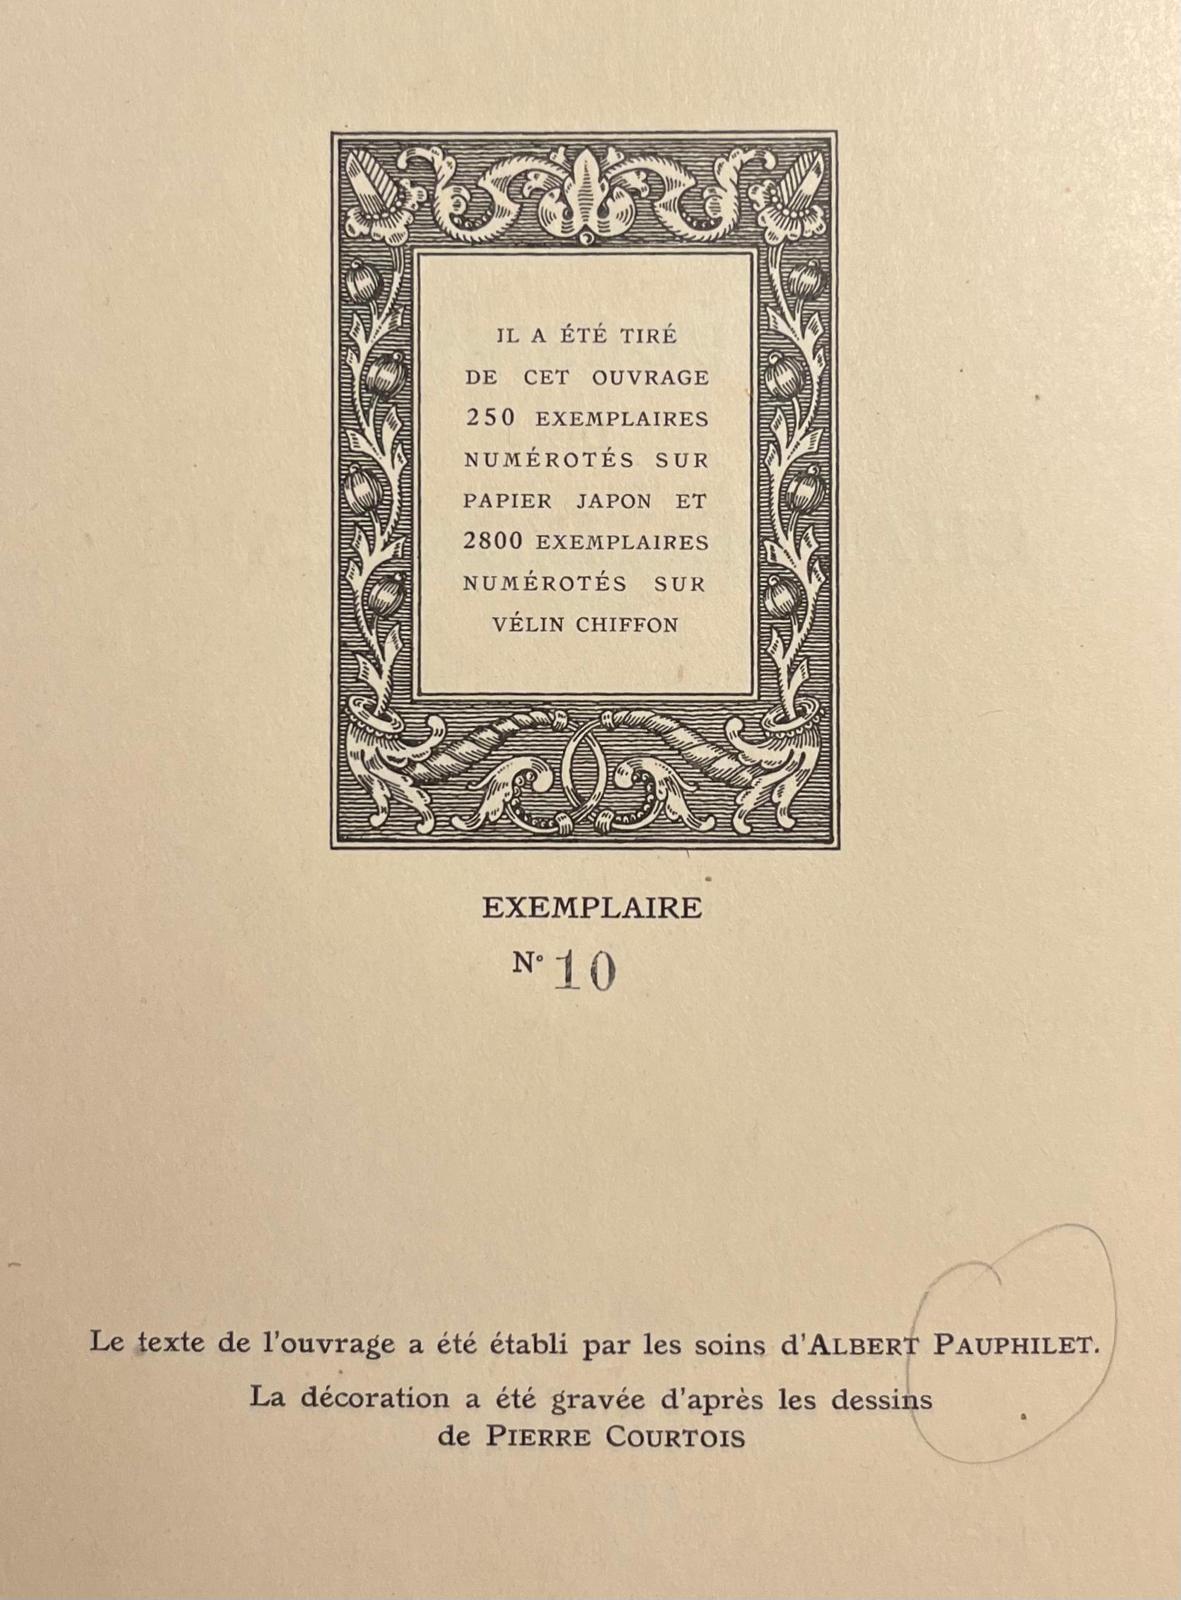 Poetry, 1926, French | Poésies de Charles d'Orléans. Paris, H. Piazza, 1926, 126 pp.